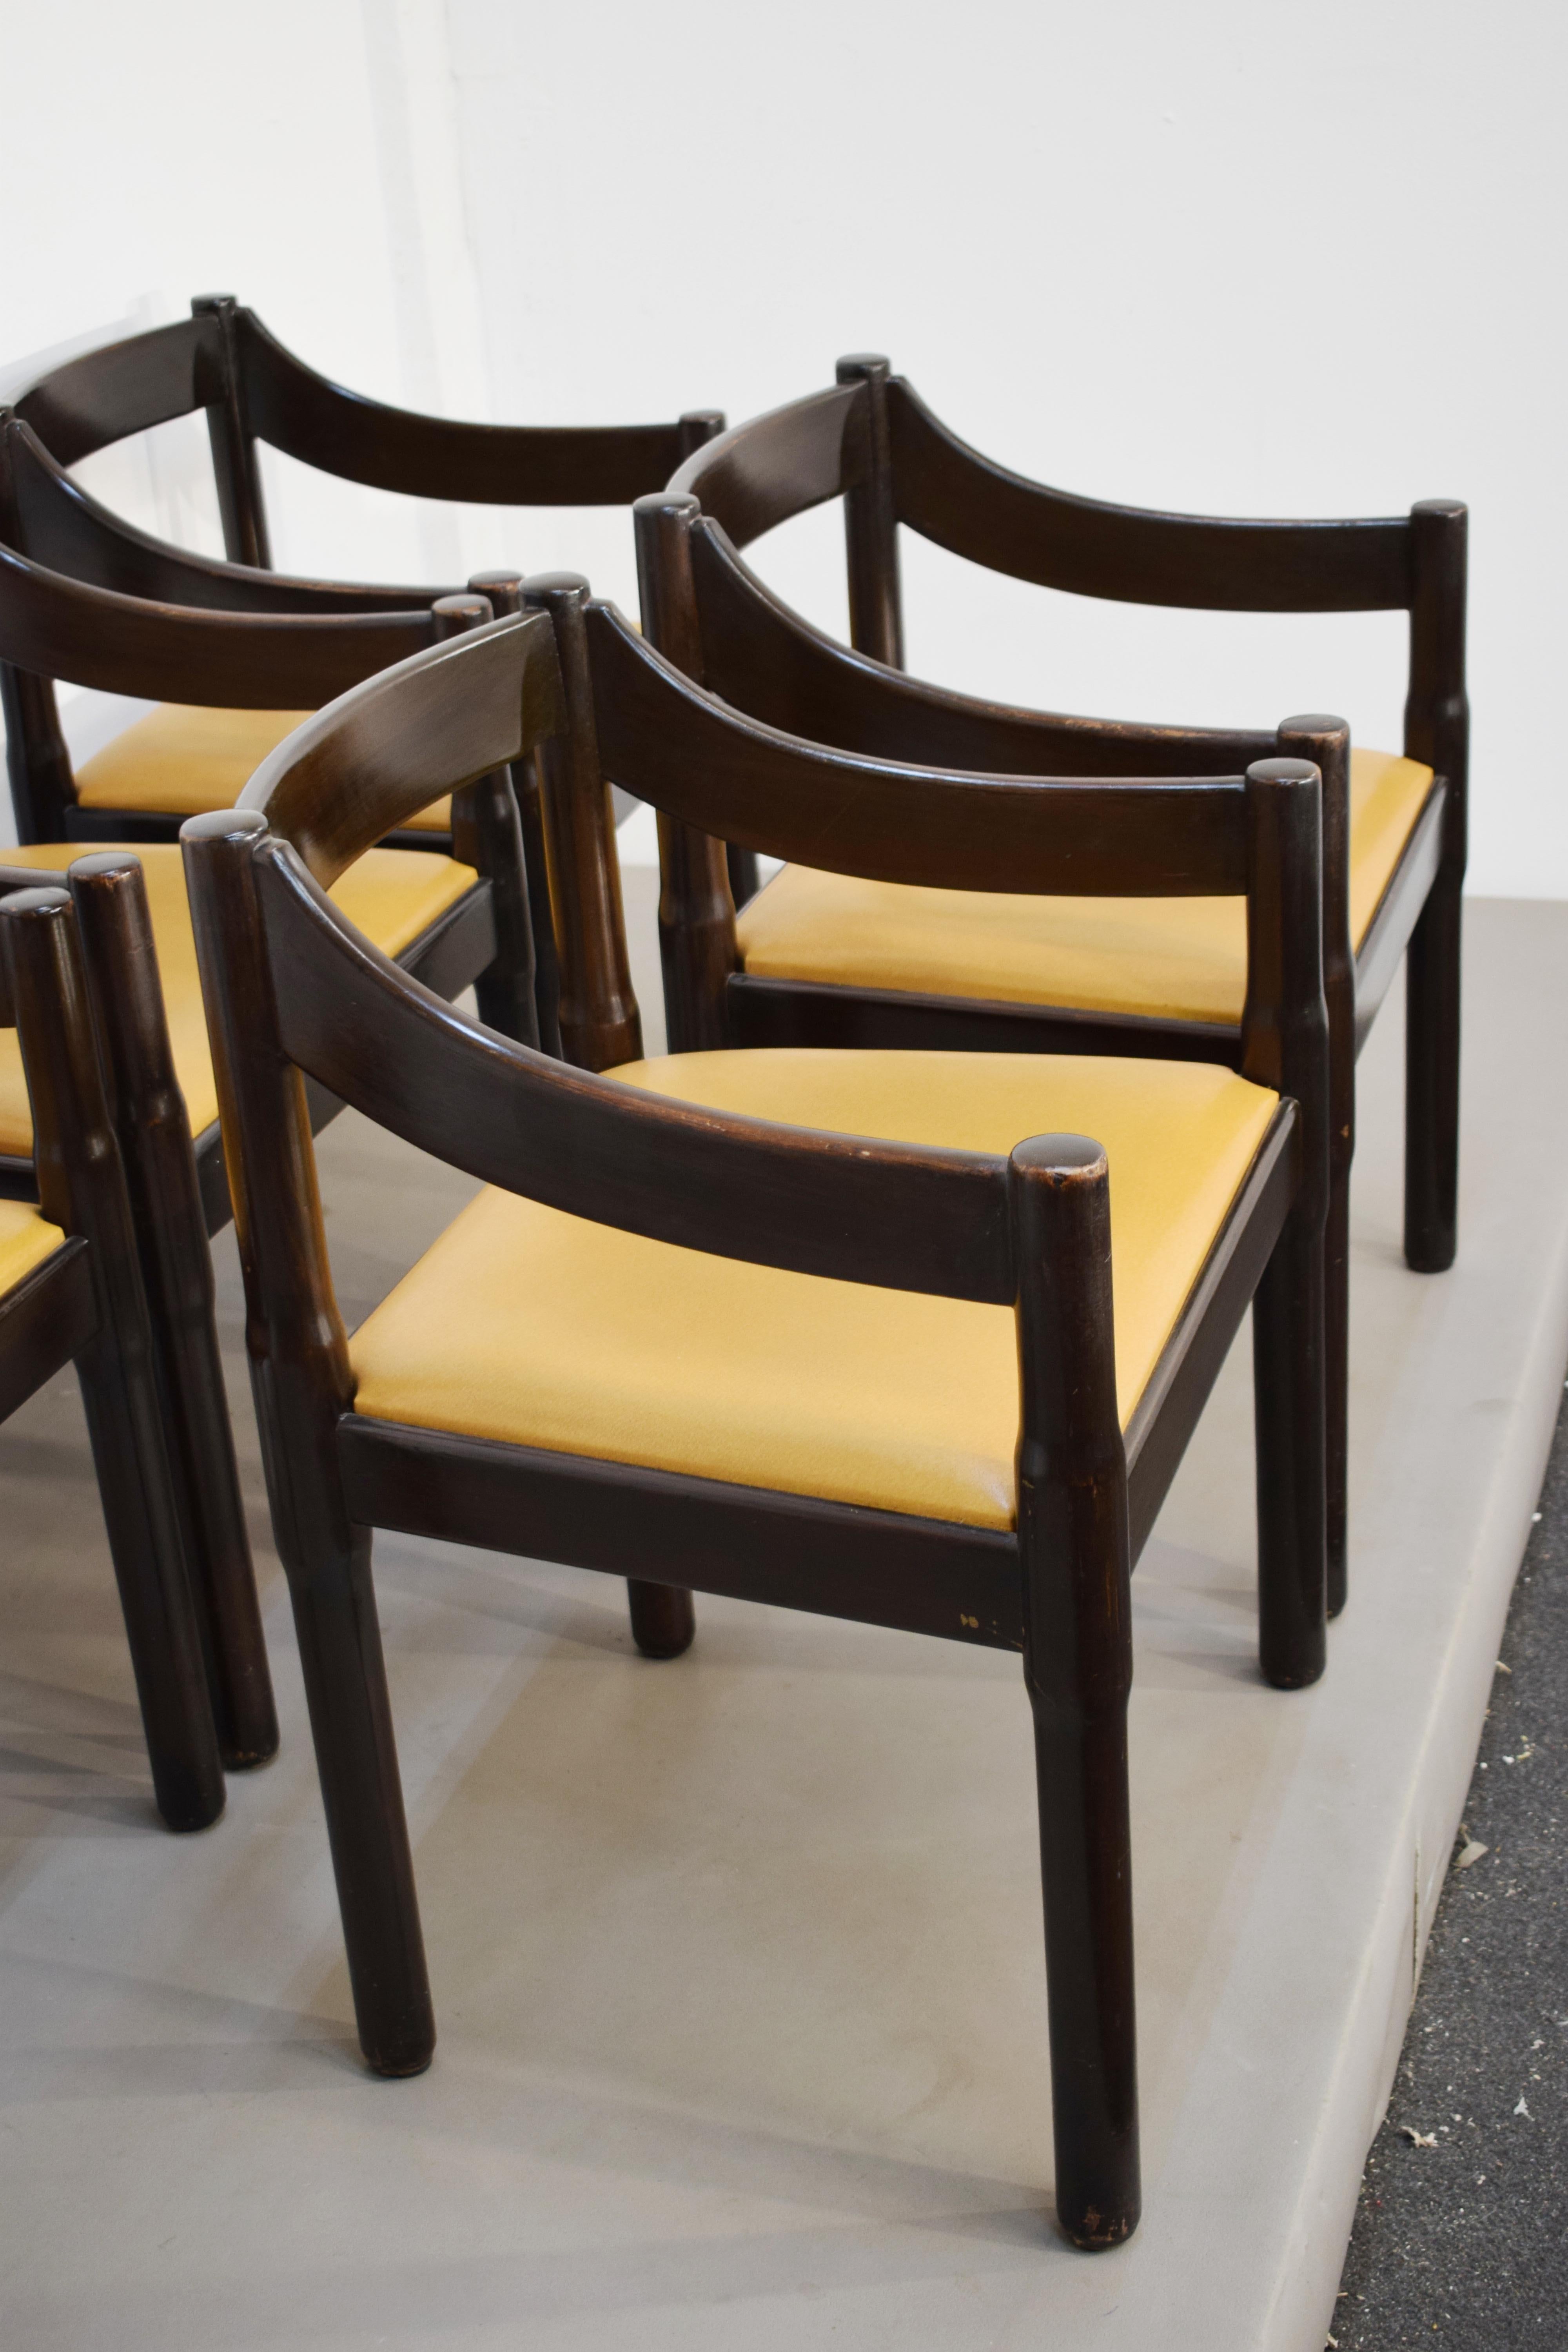 Satz von 5 Carimate-Stühlen von Vico Magistretti, Italien, 1960er Jahre
Abmessungen: H= 74 cm; B= 59 cm; T= 47 cm; H-Sitz = 44 cm.